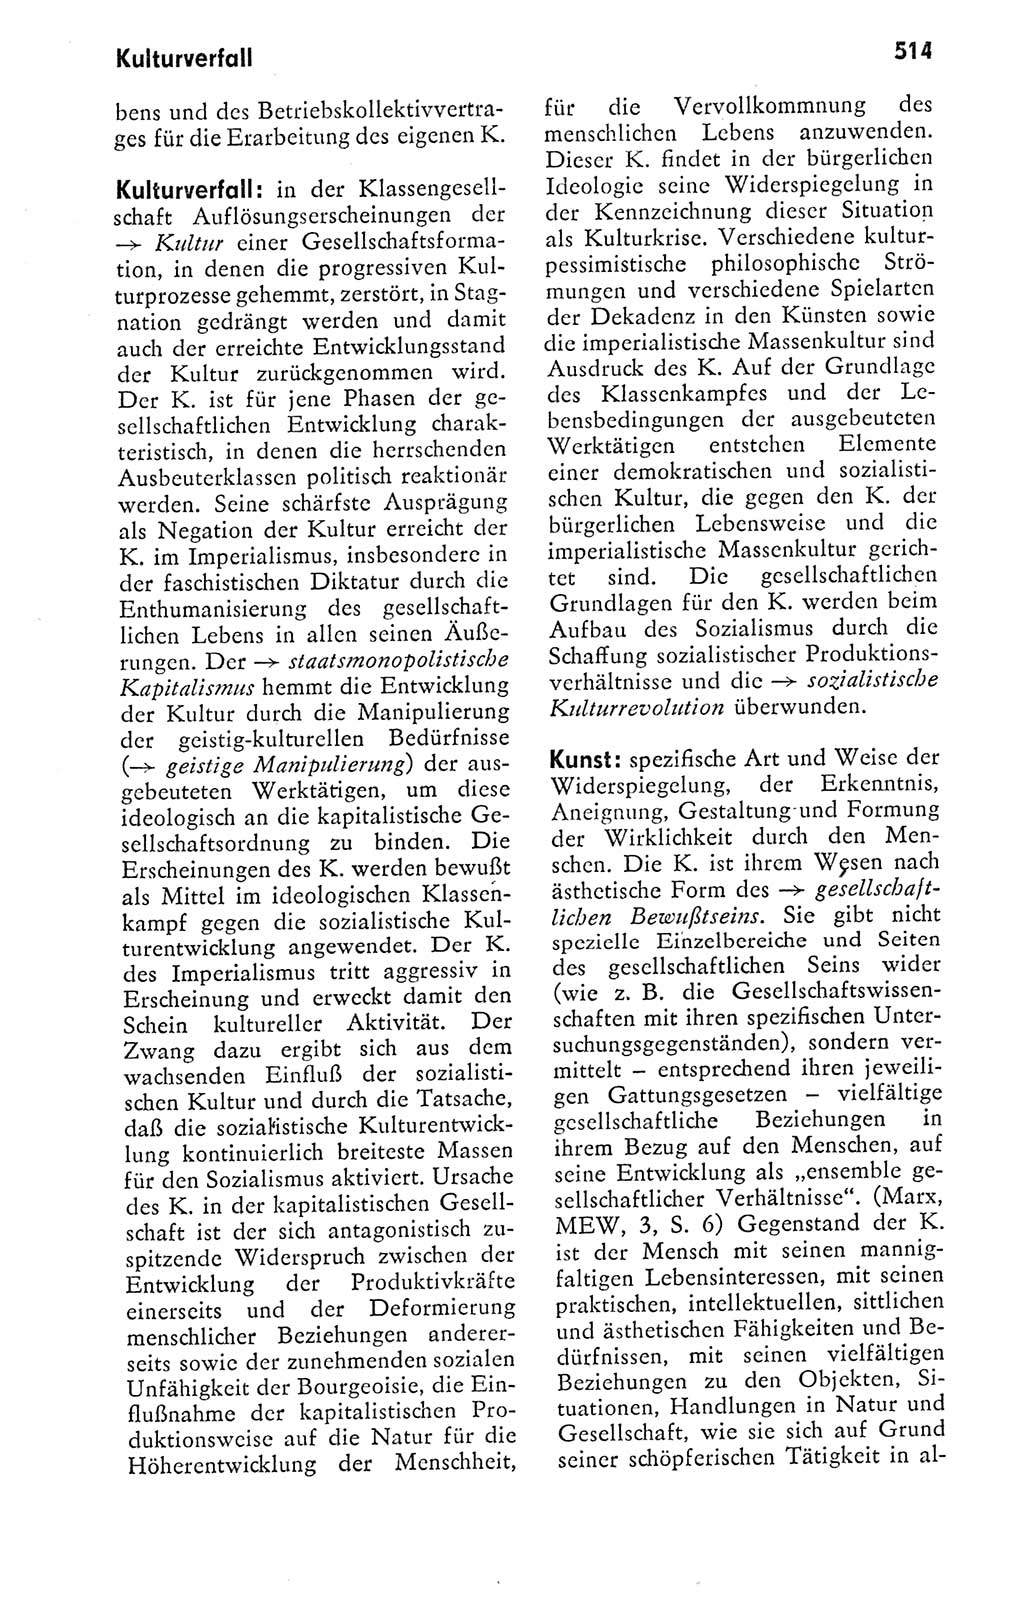 Kleines politisches Wörterbuch [Deutsche Demokratische Republik (DDR)] 1978, Seite 514 (Kl. pol. Wb. DDR 1978, S. 514)